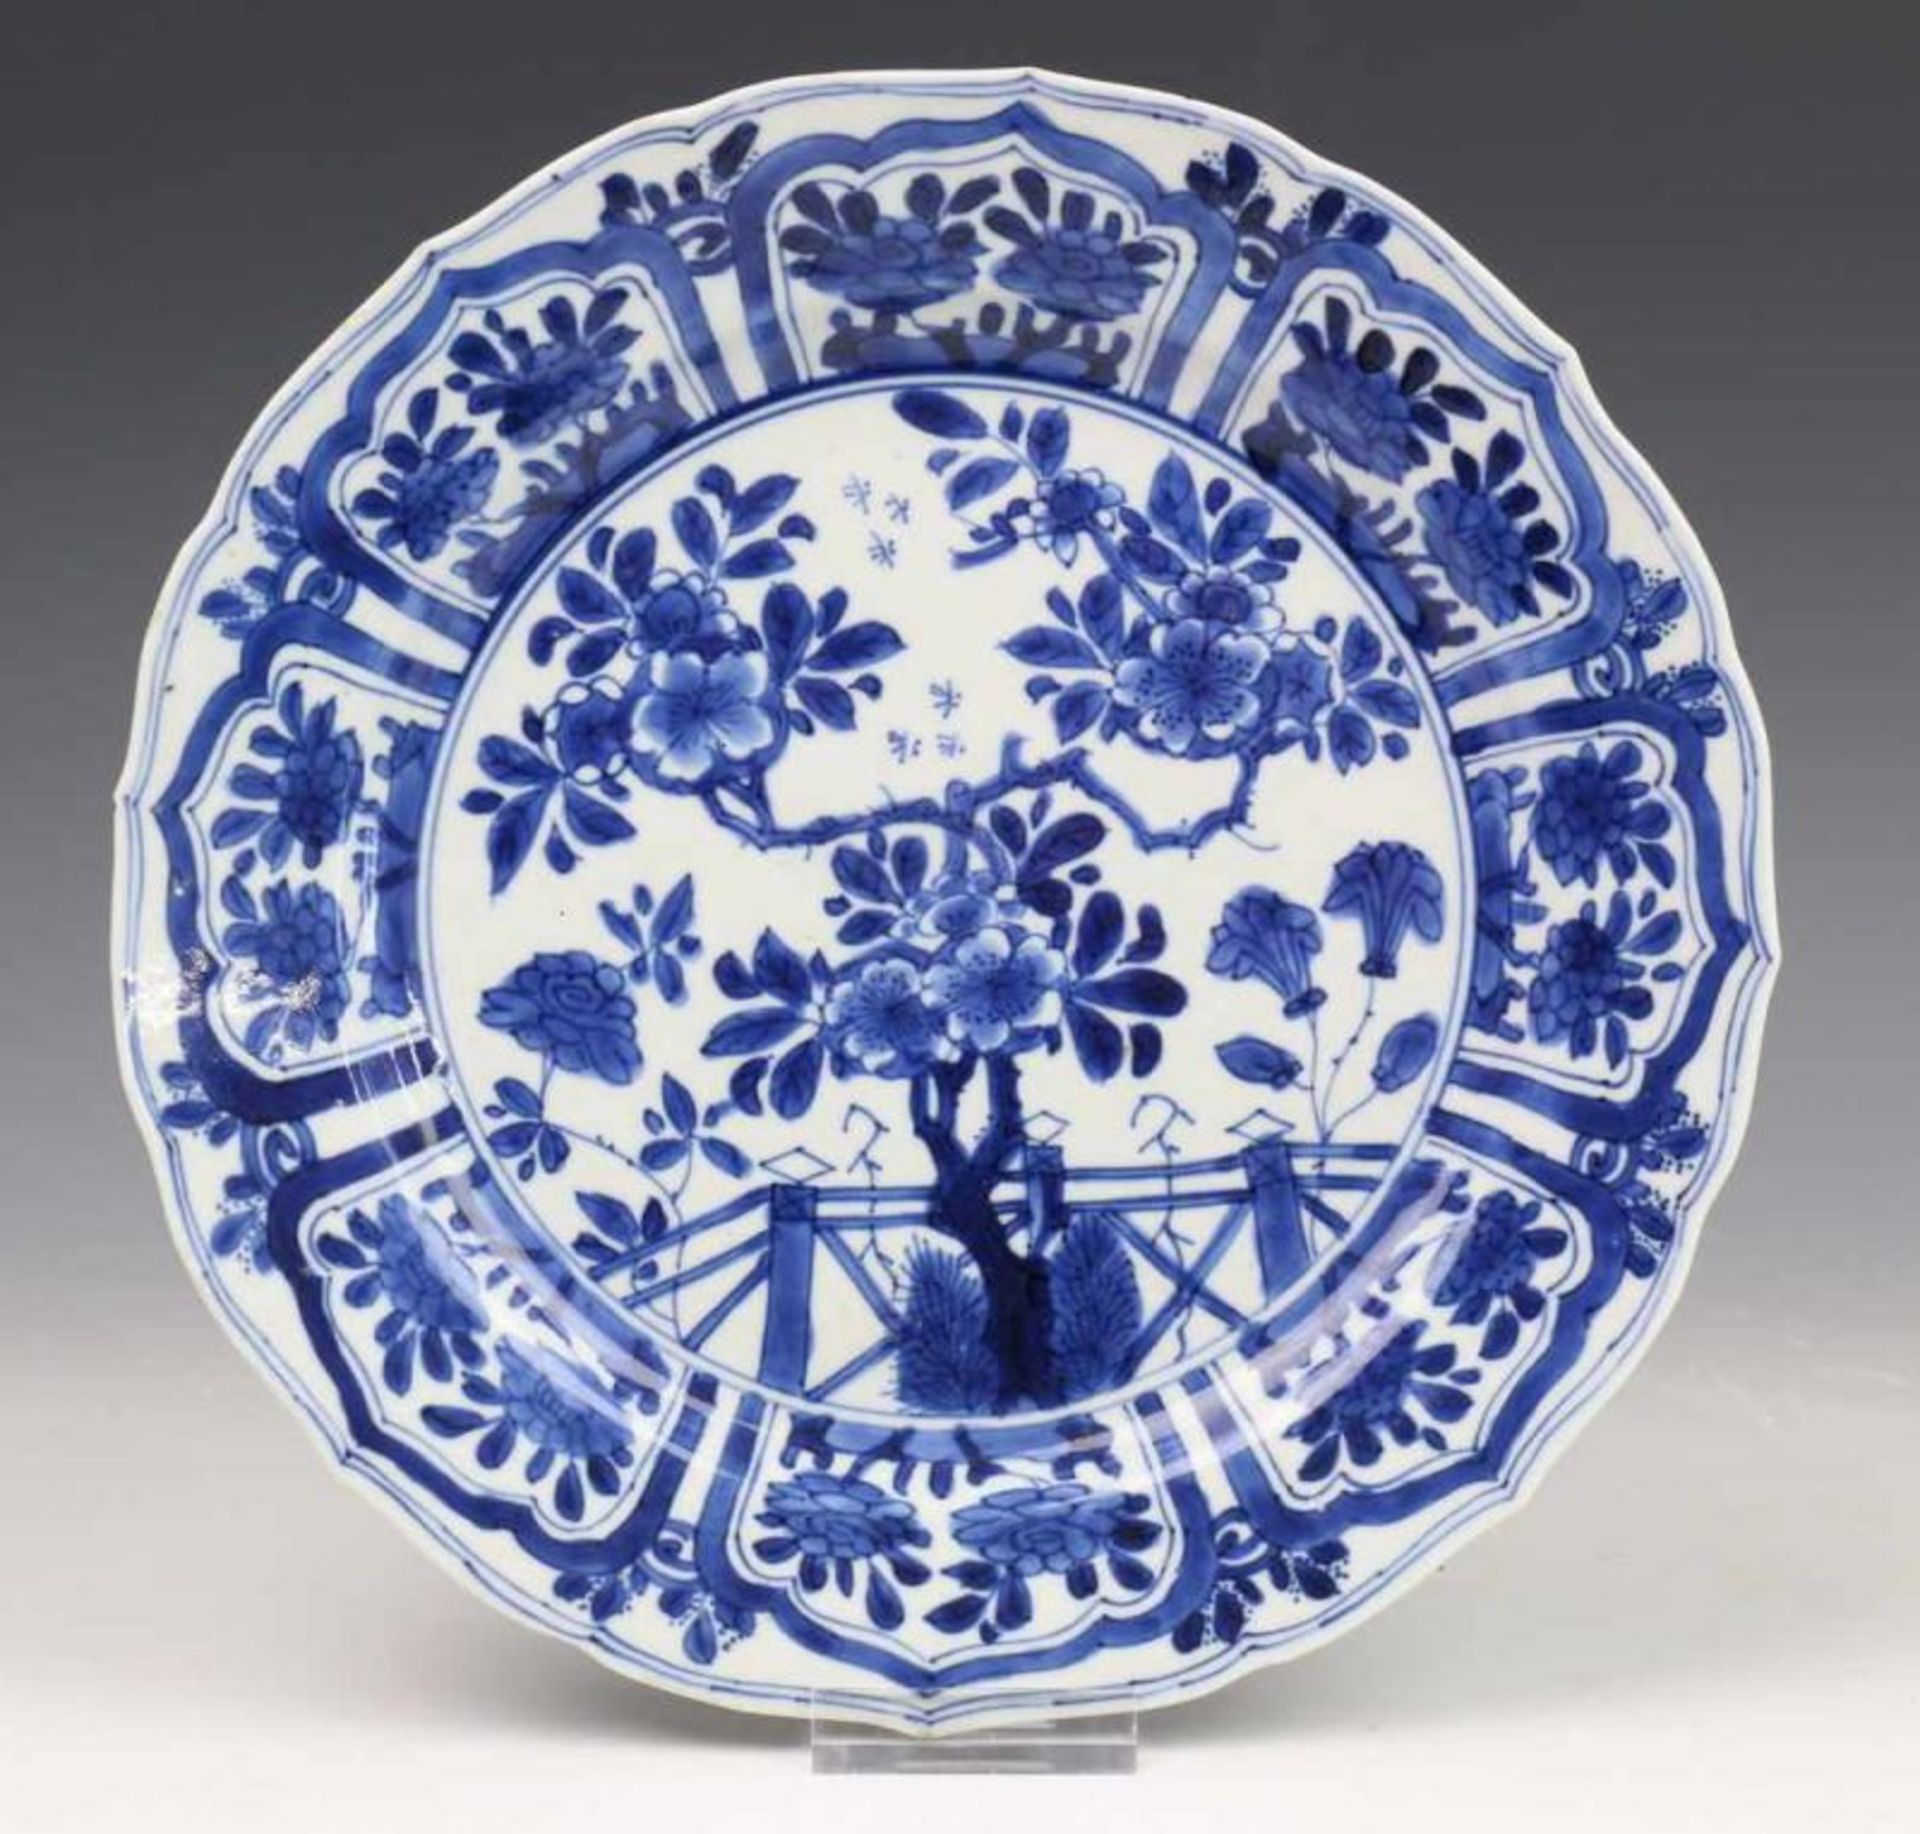 China, paar blauw-wit porseleinen borden, Kangxi, met decor van bloesemboom bij hekwerk, de rand met - Image 2 of 5